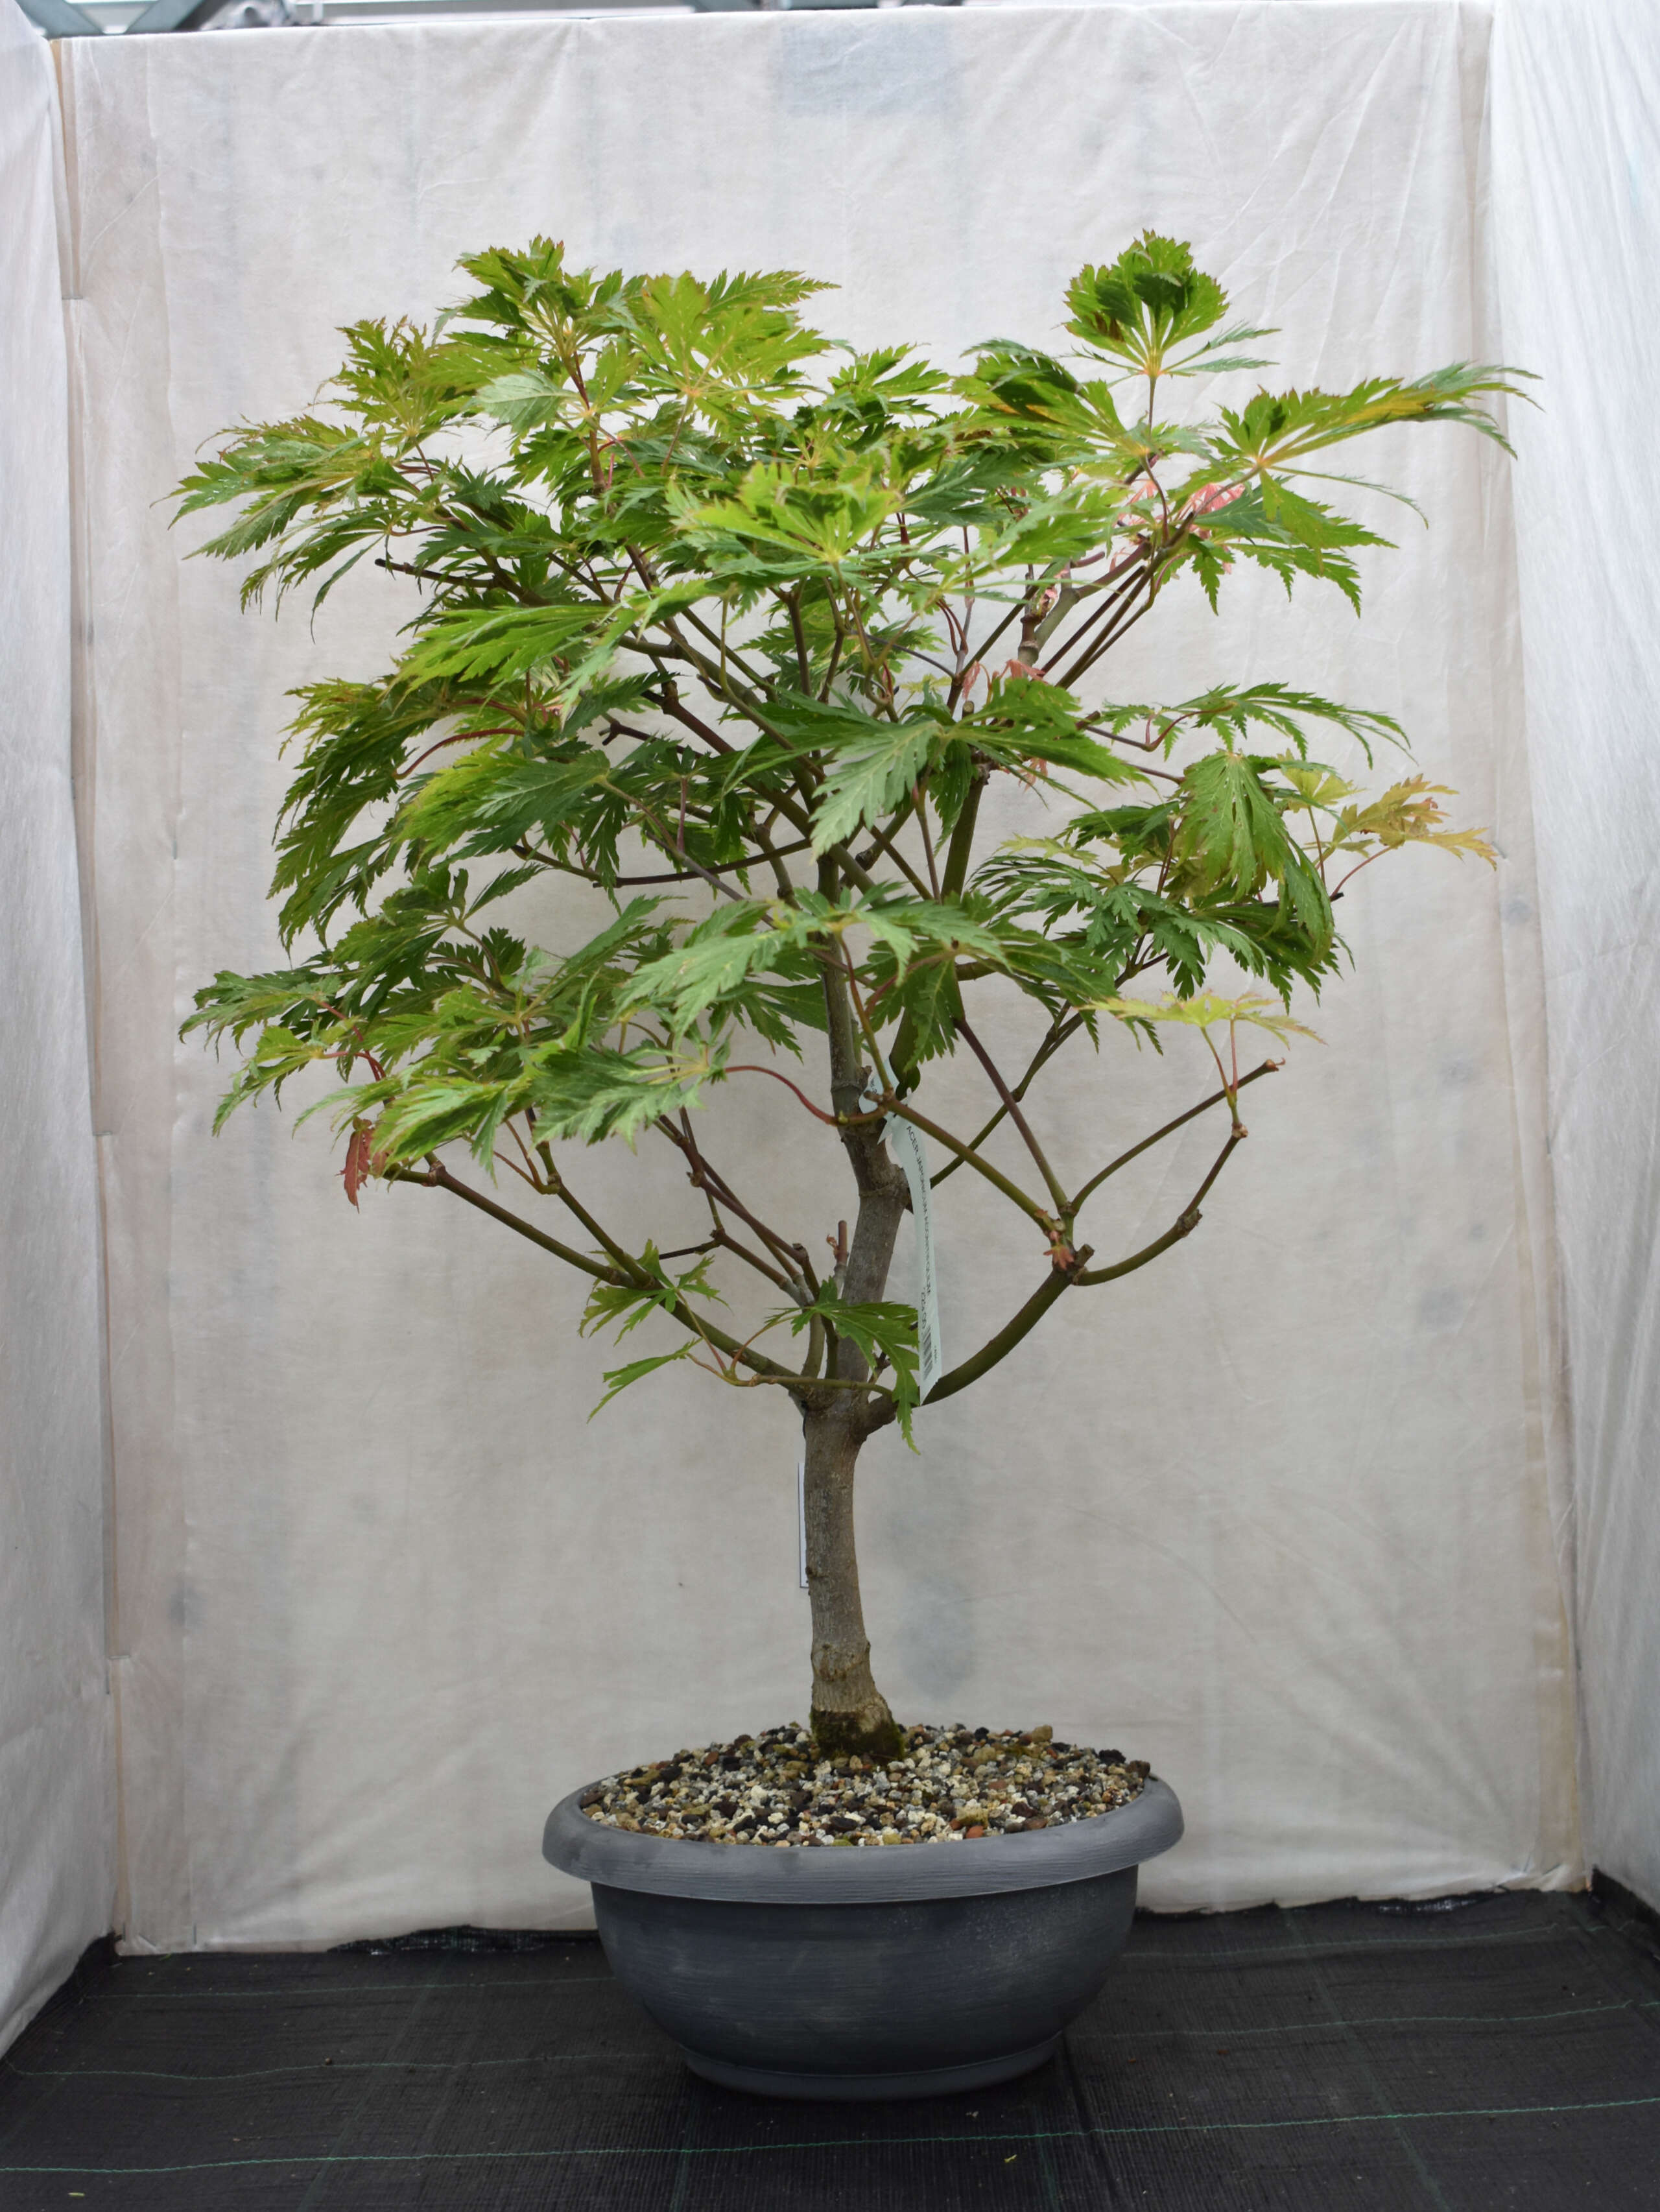 Japanischer Ahorn Bonsai  Acer japonicum 'Aconitifolium'